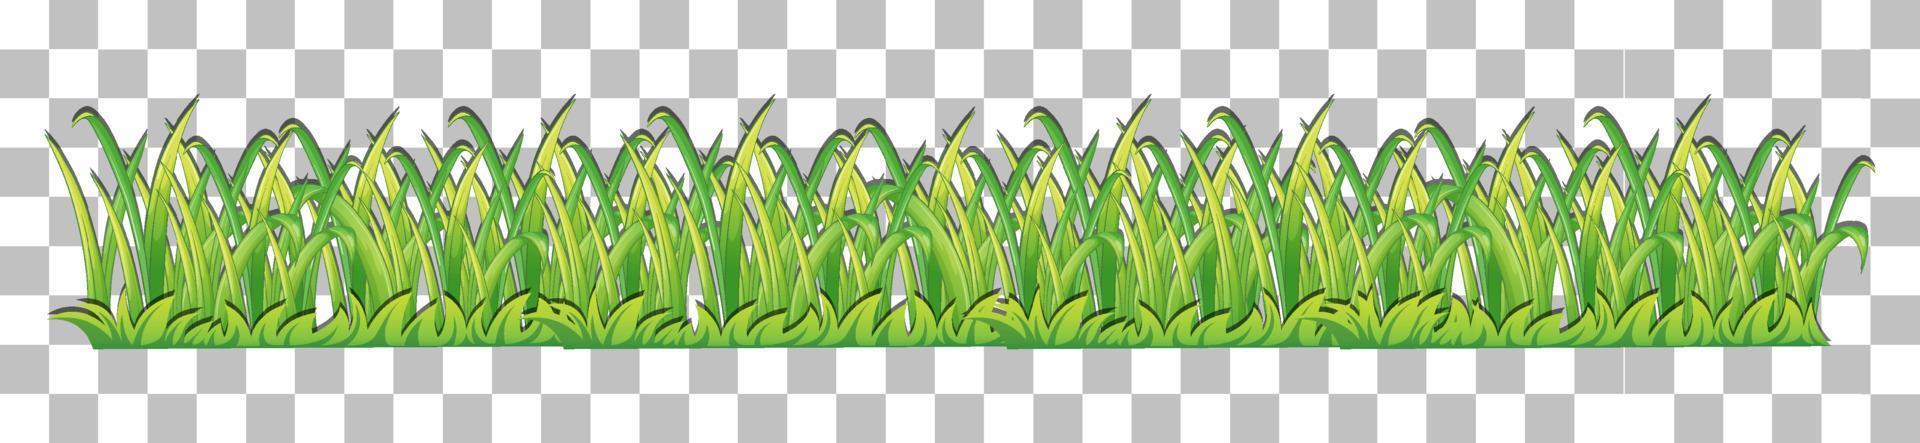 grönt gräs bakgrund för inredning vektor